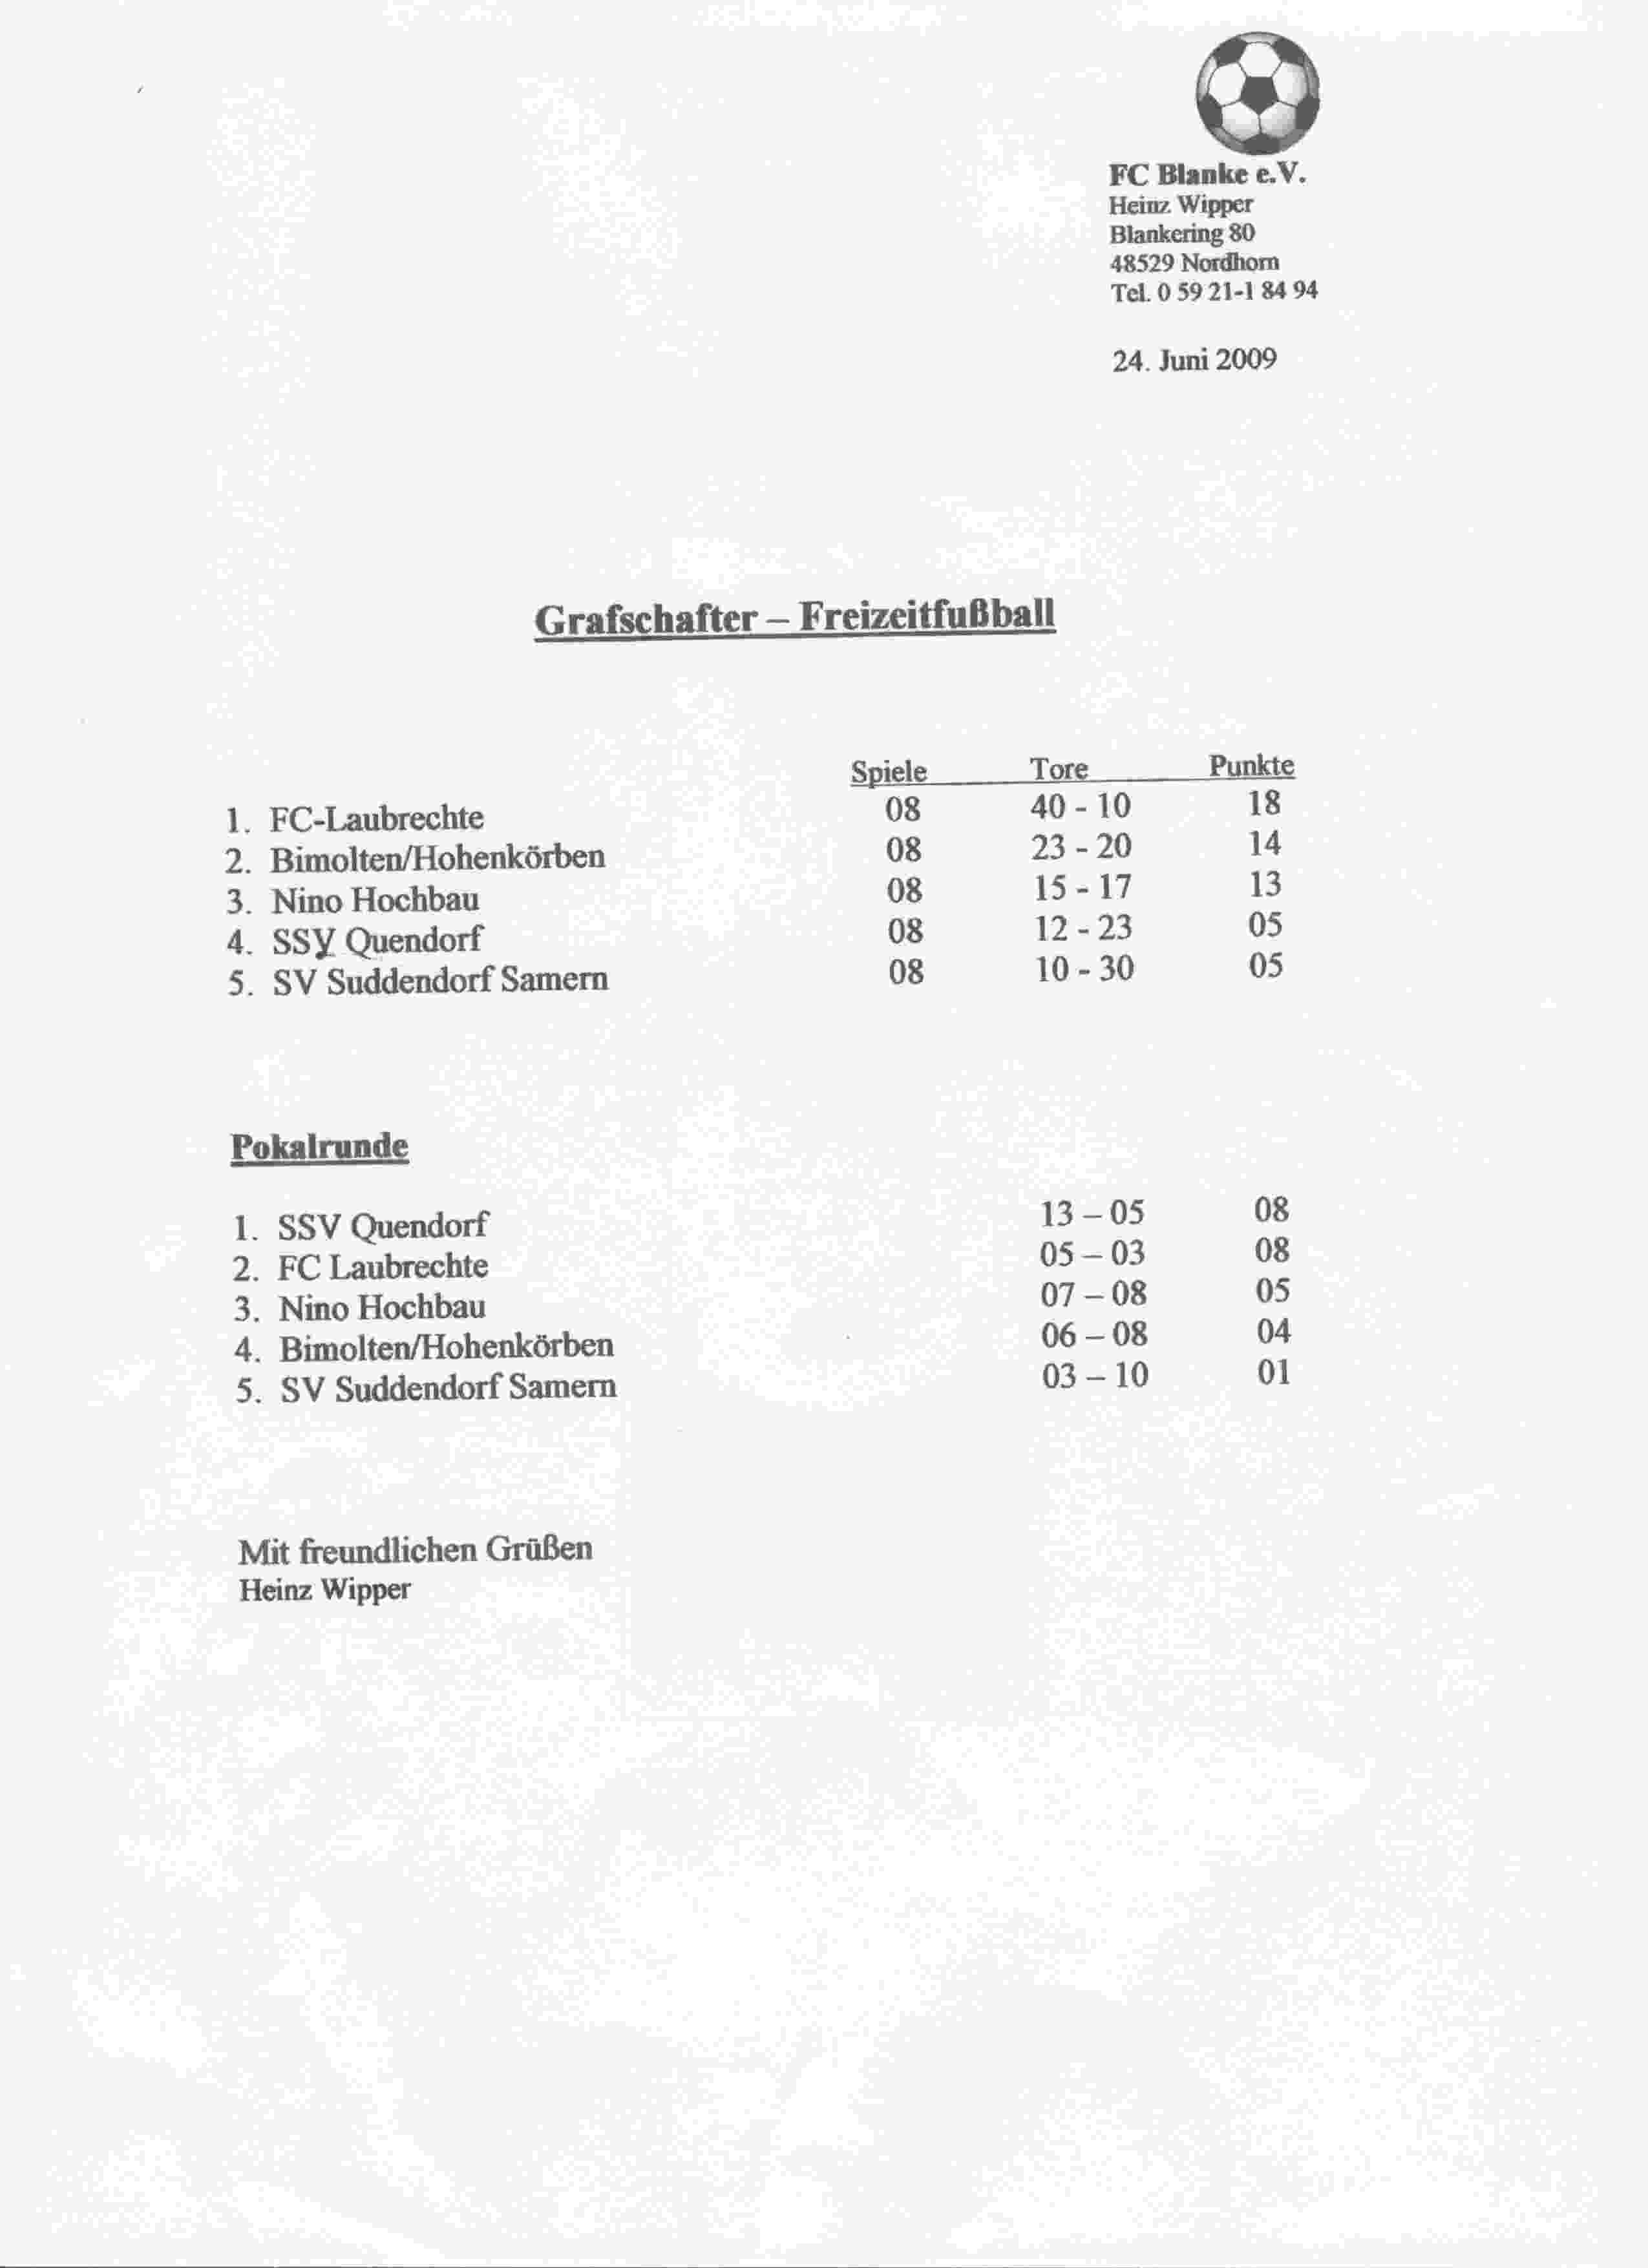 Eindstand Grafschafter Freizeit Fuβball Liga seizoen 2008/2009